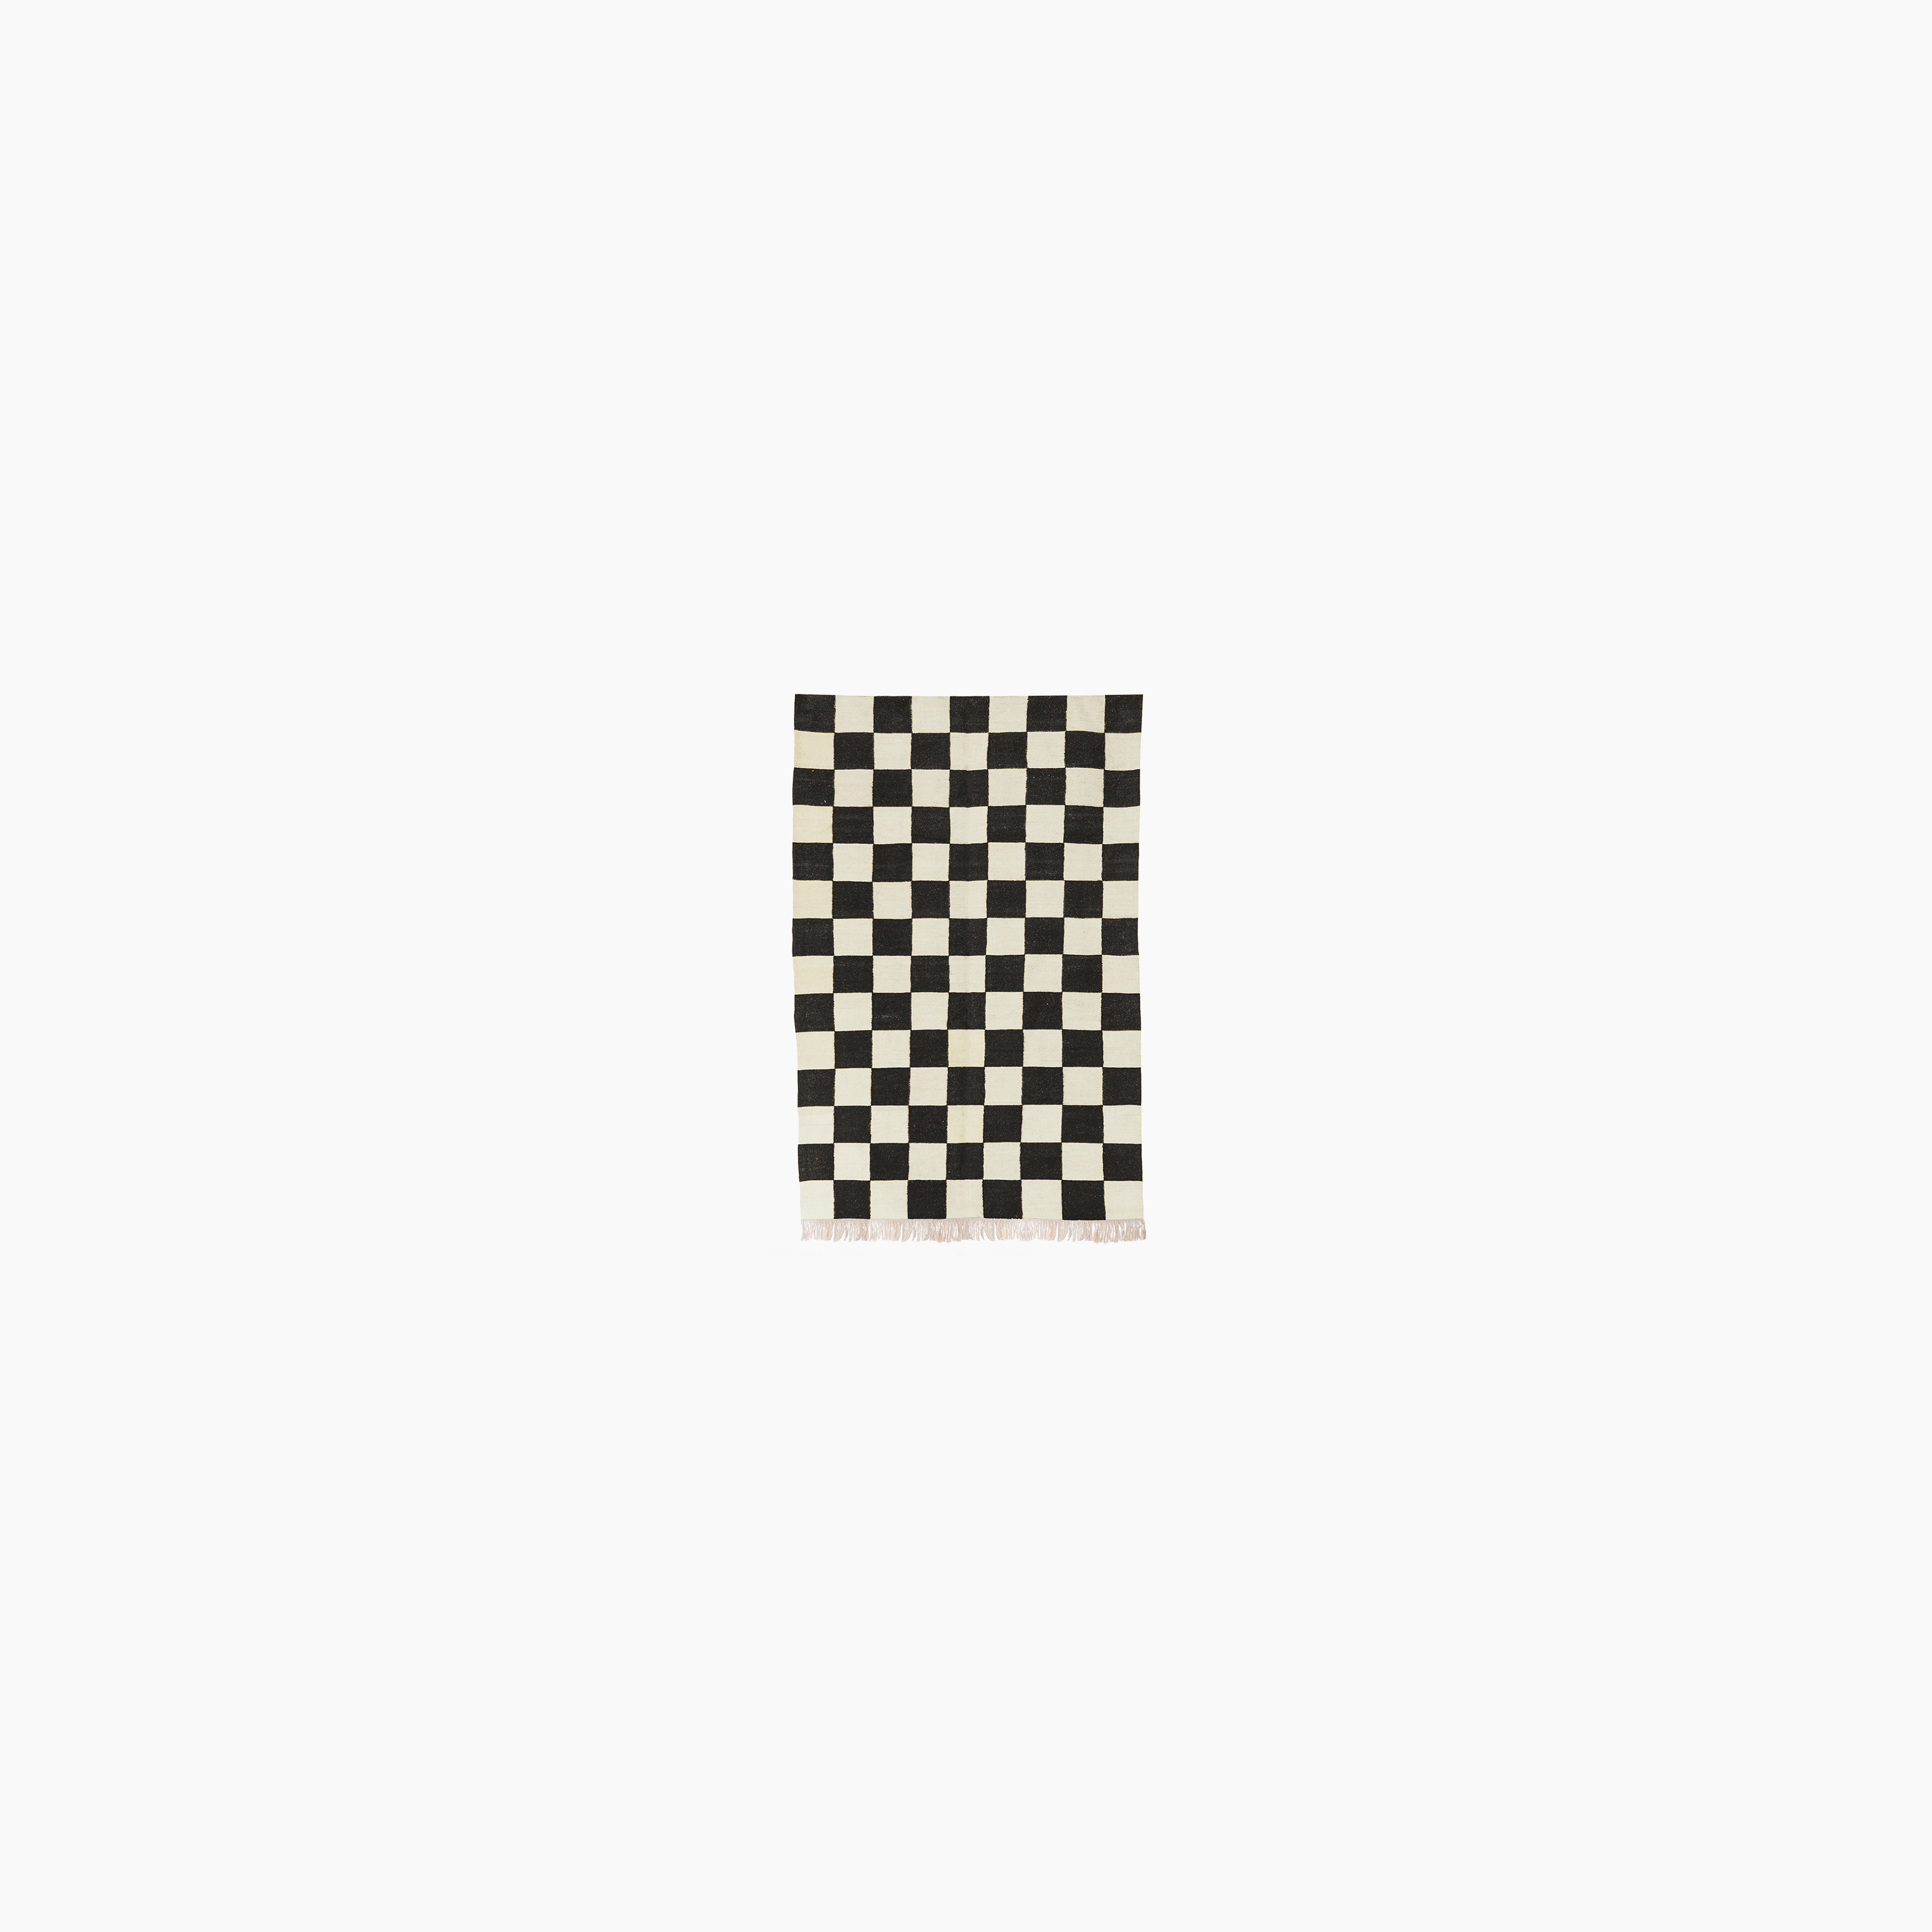 Fatima’s Checkerboard Flatweave